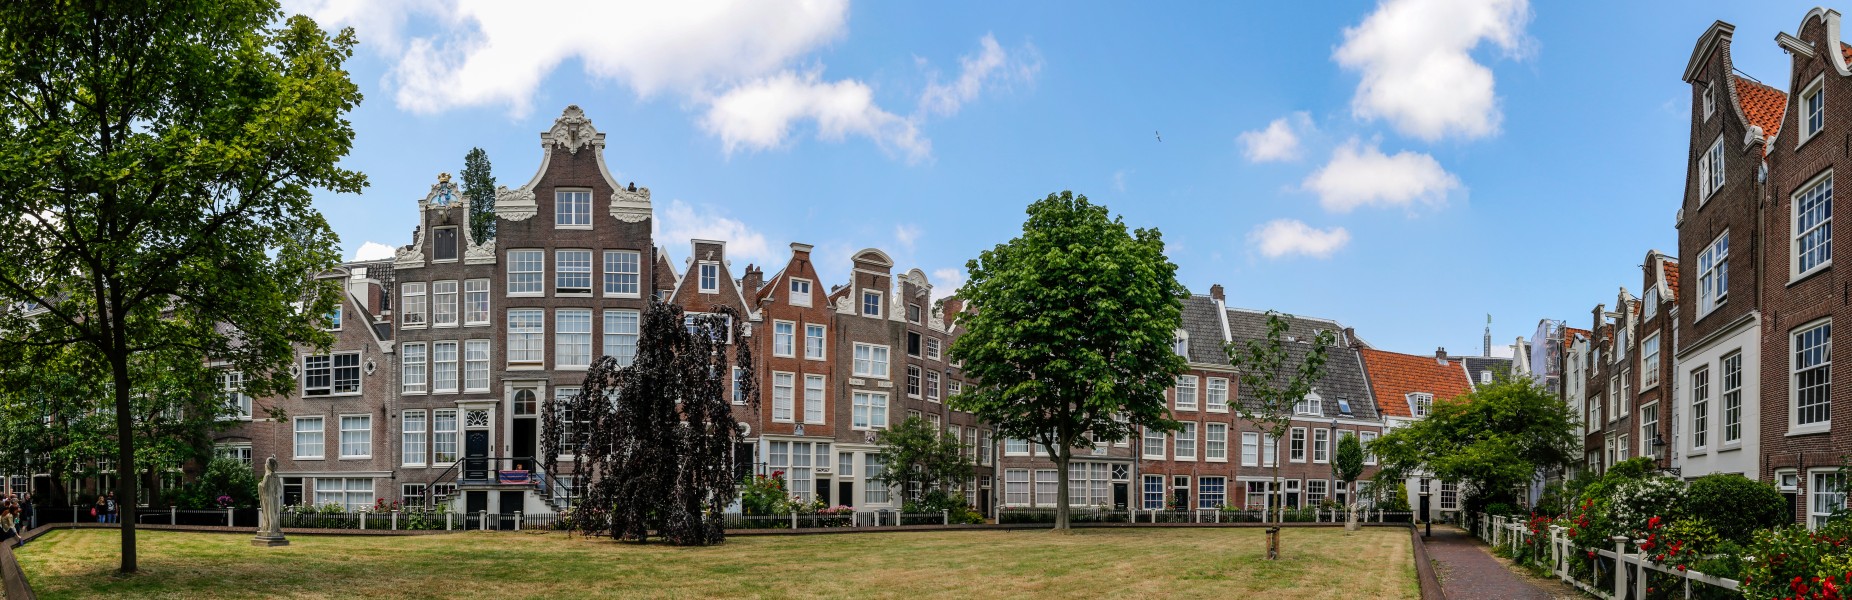 Amsterdam (NL), Begijnhof -- 2015 -- 7215